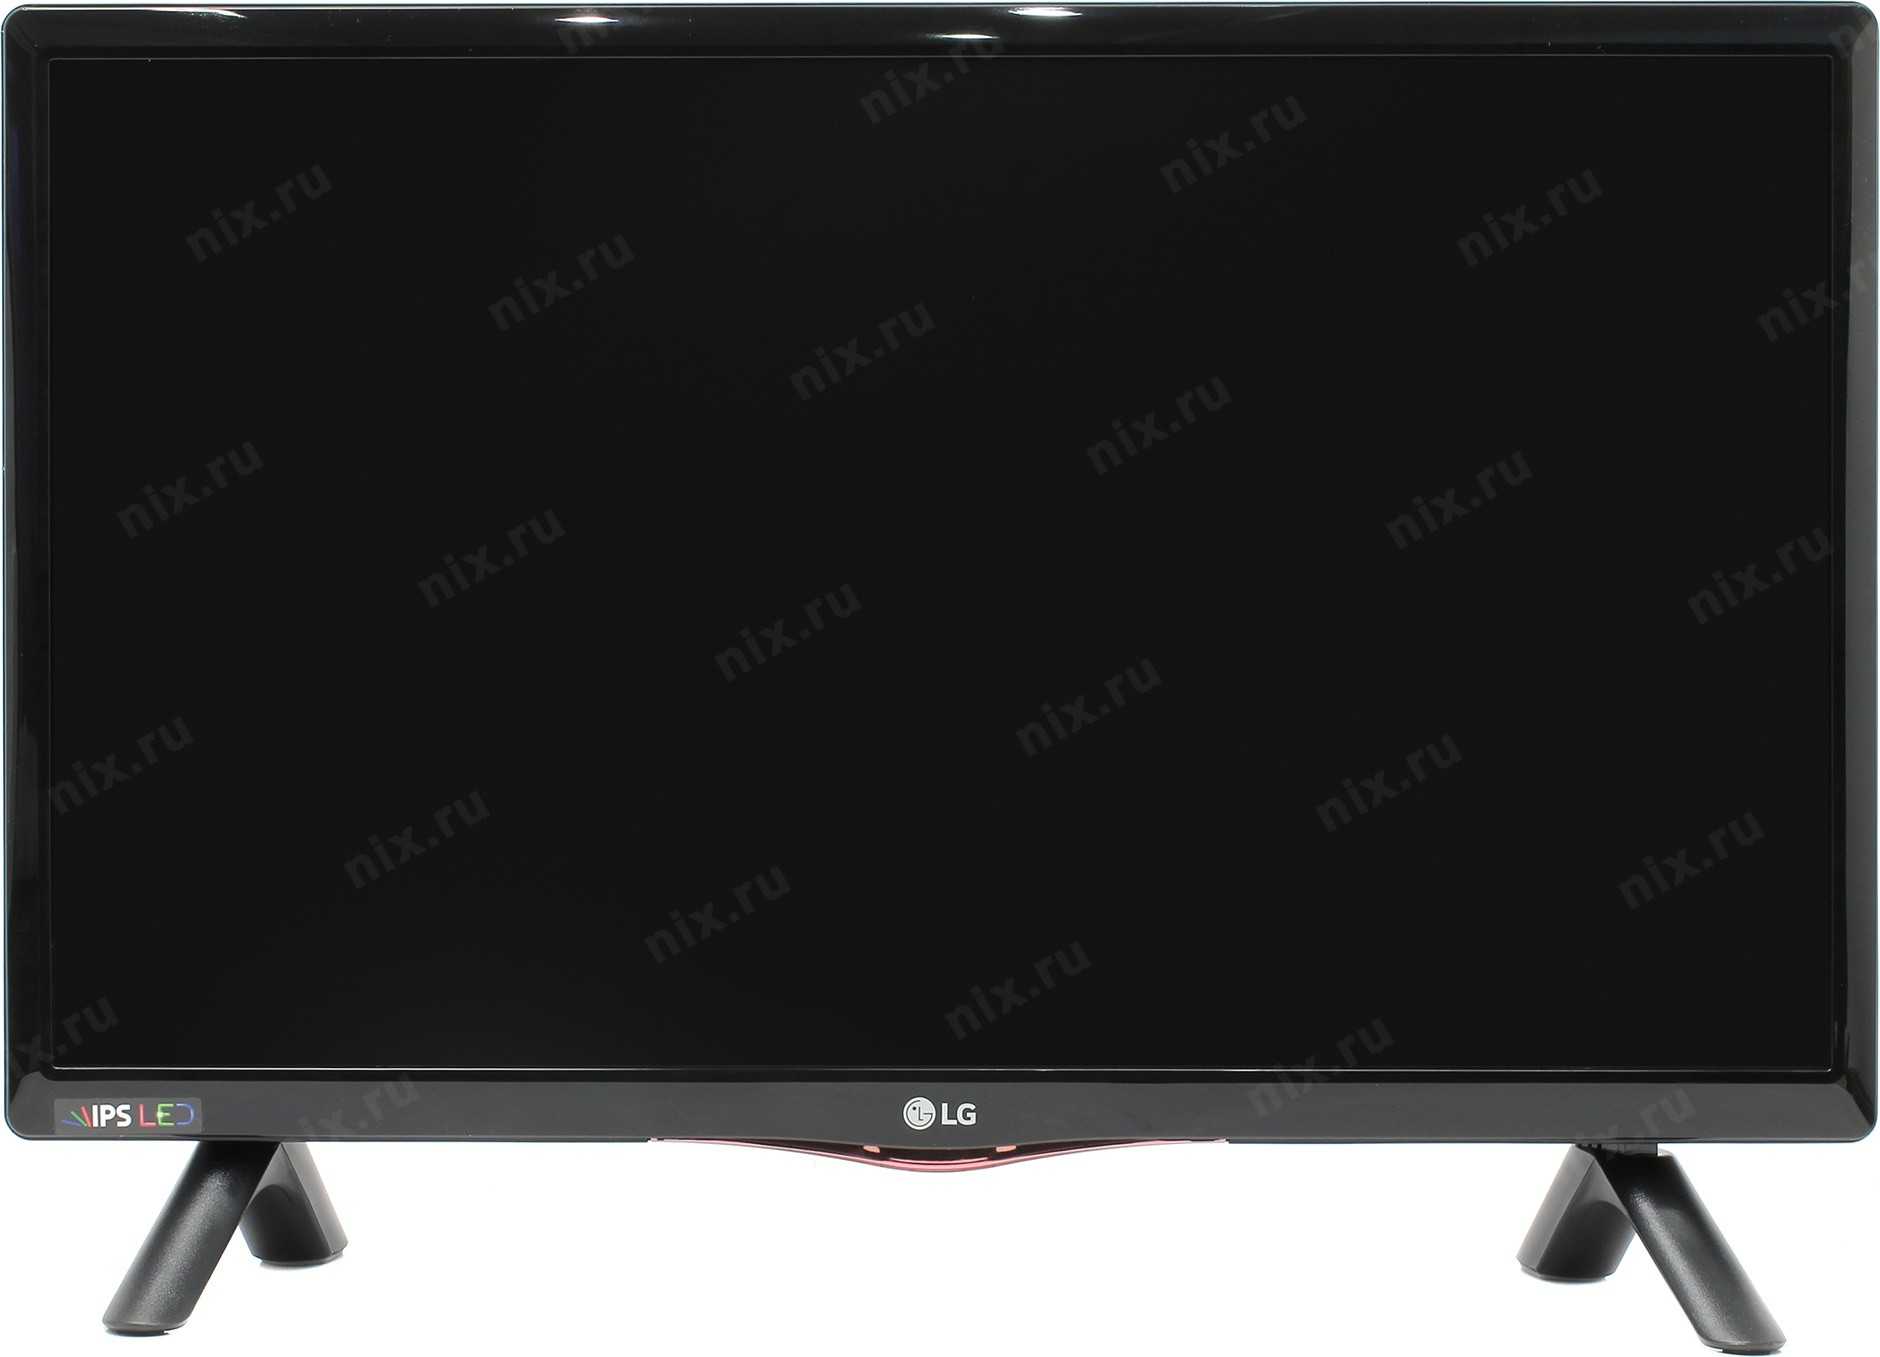 Жк телевизор 22" lg 22lh450v-pz — купить, цена и характеристики, отзывы